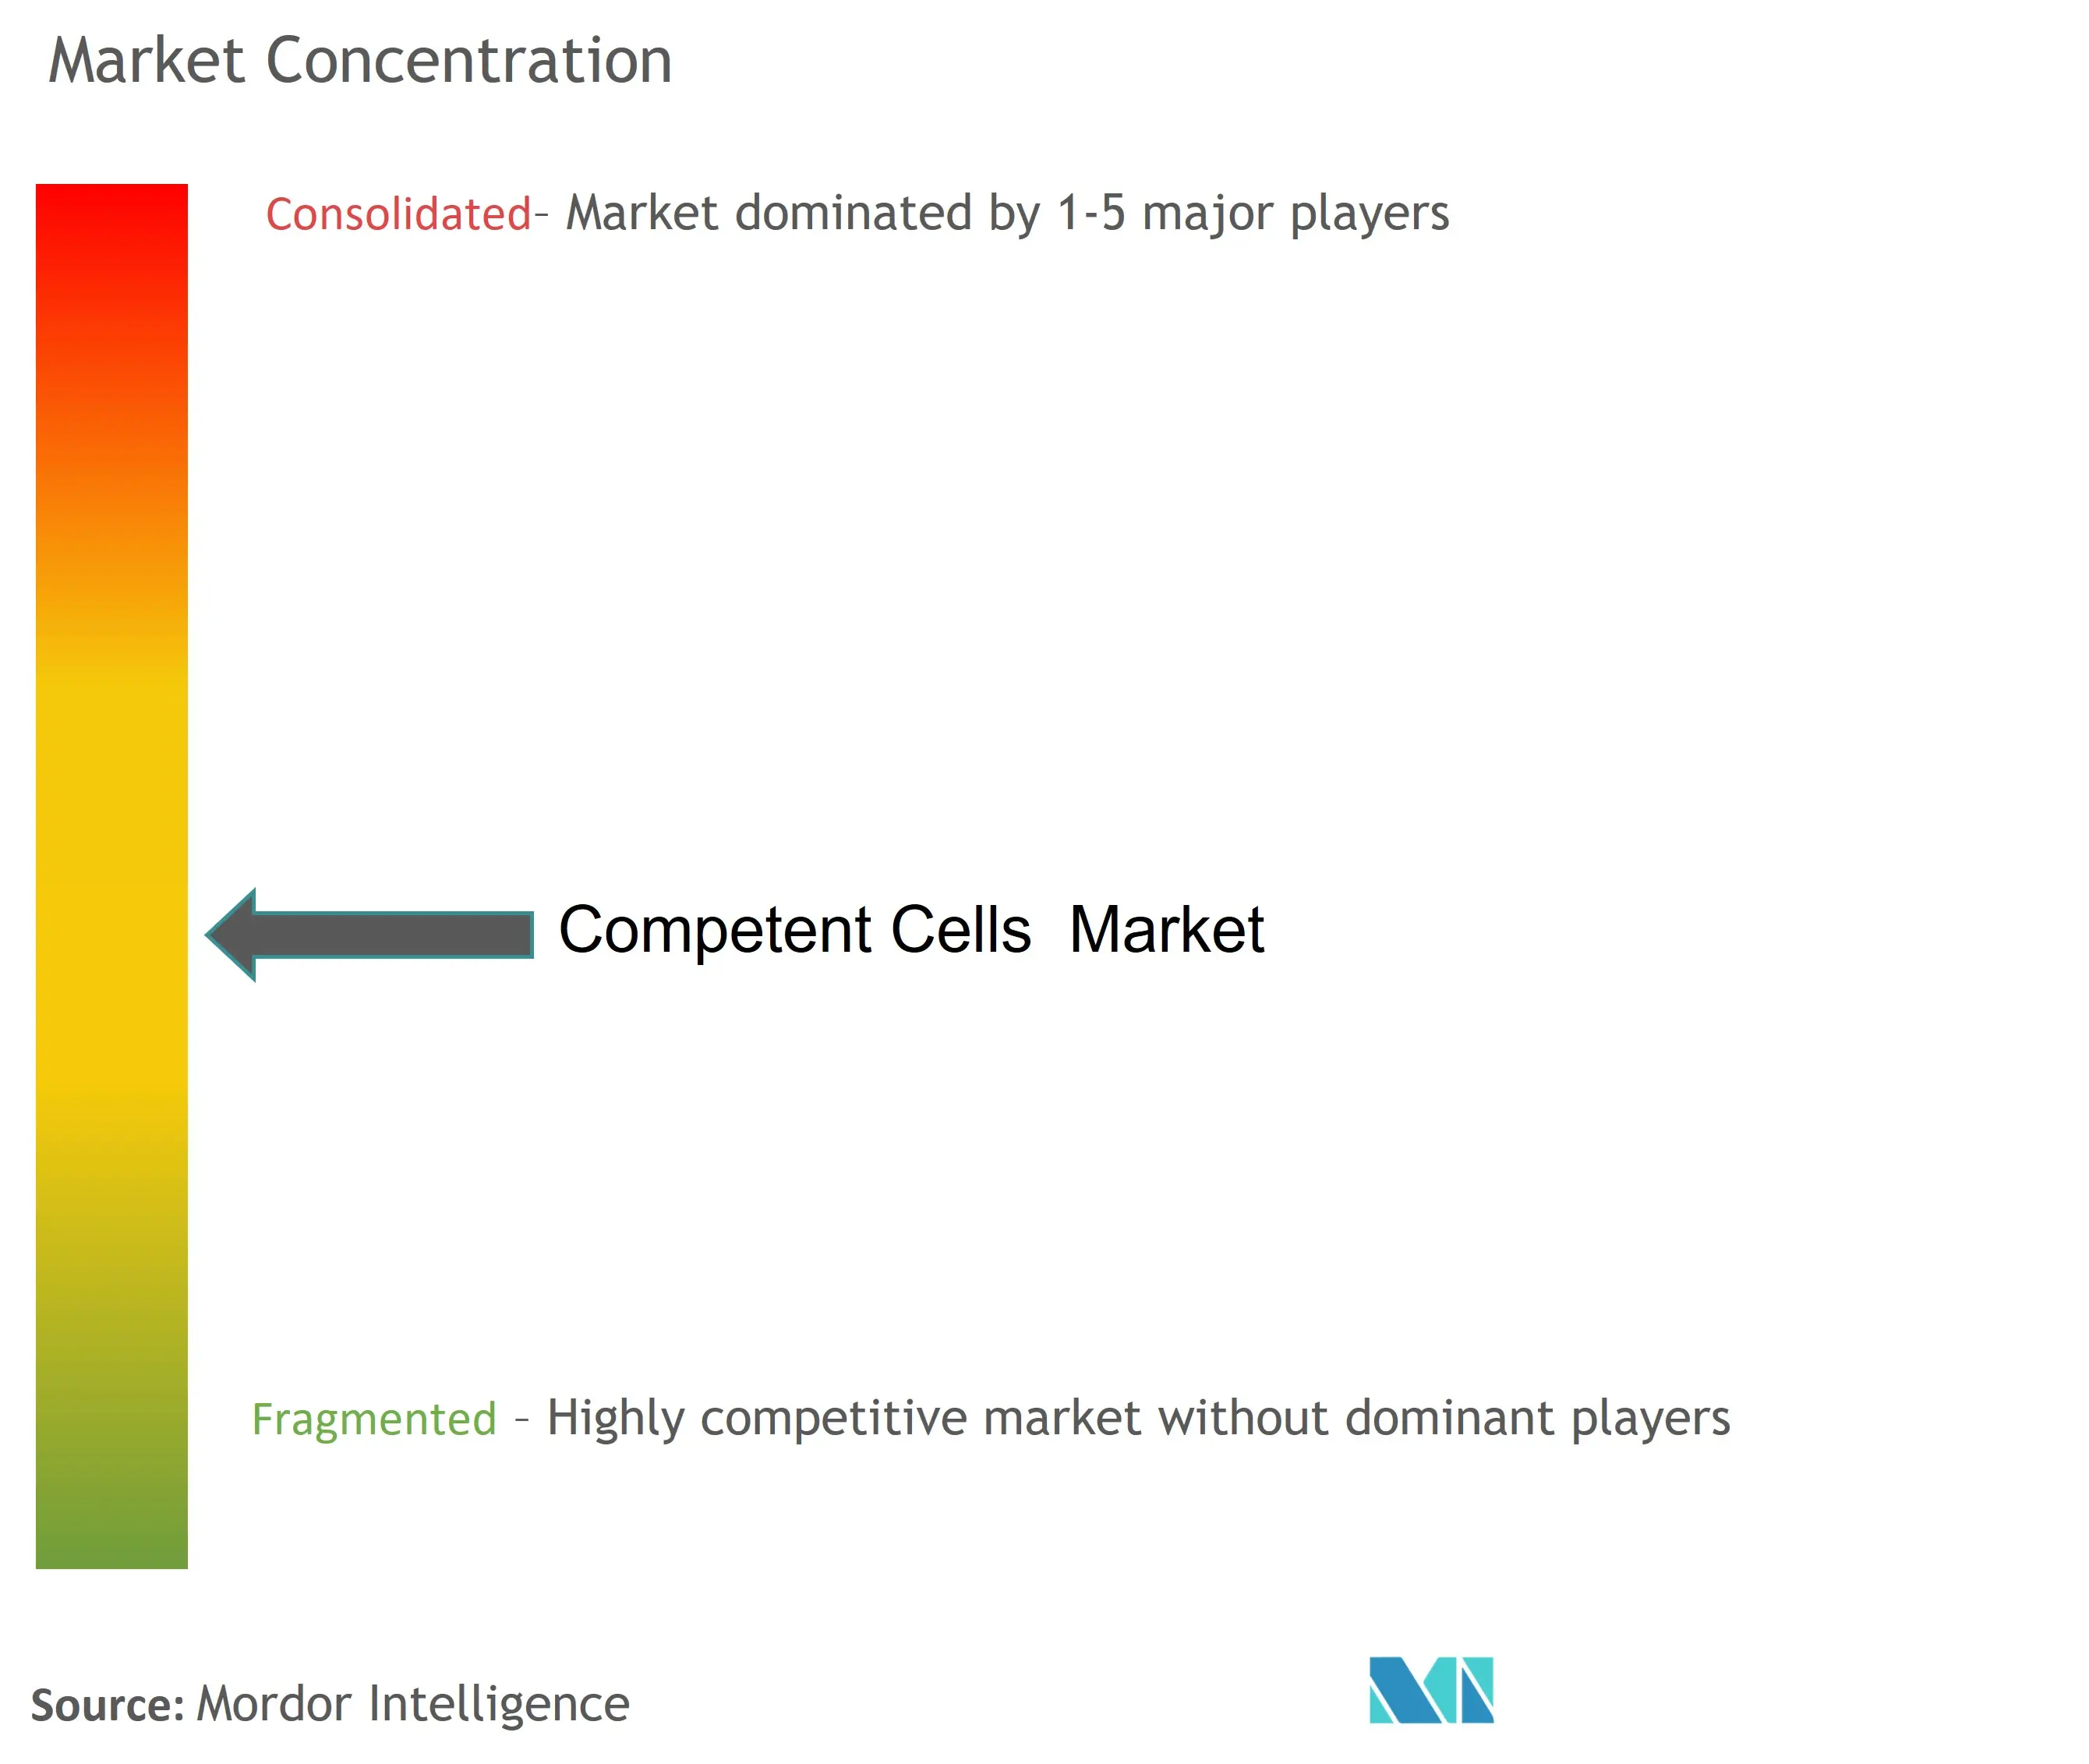 Competent Cells Market Concentration